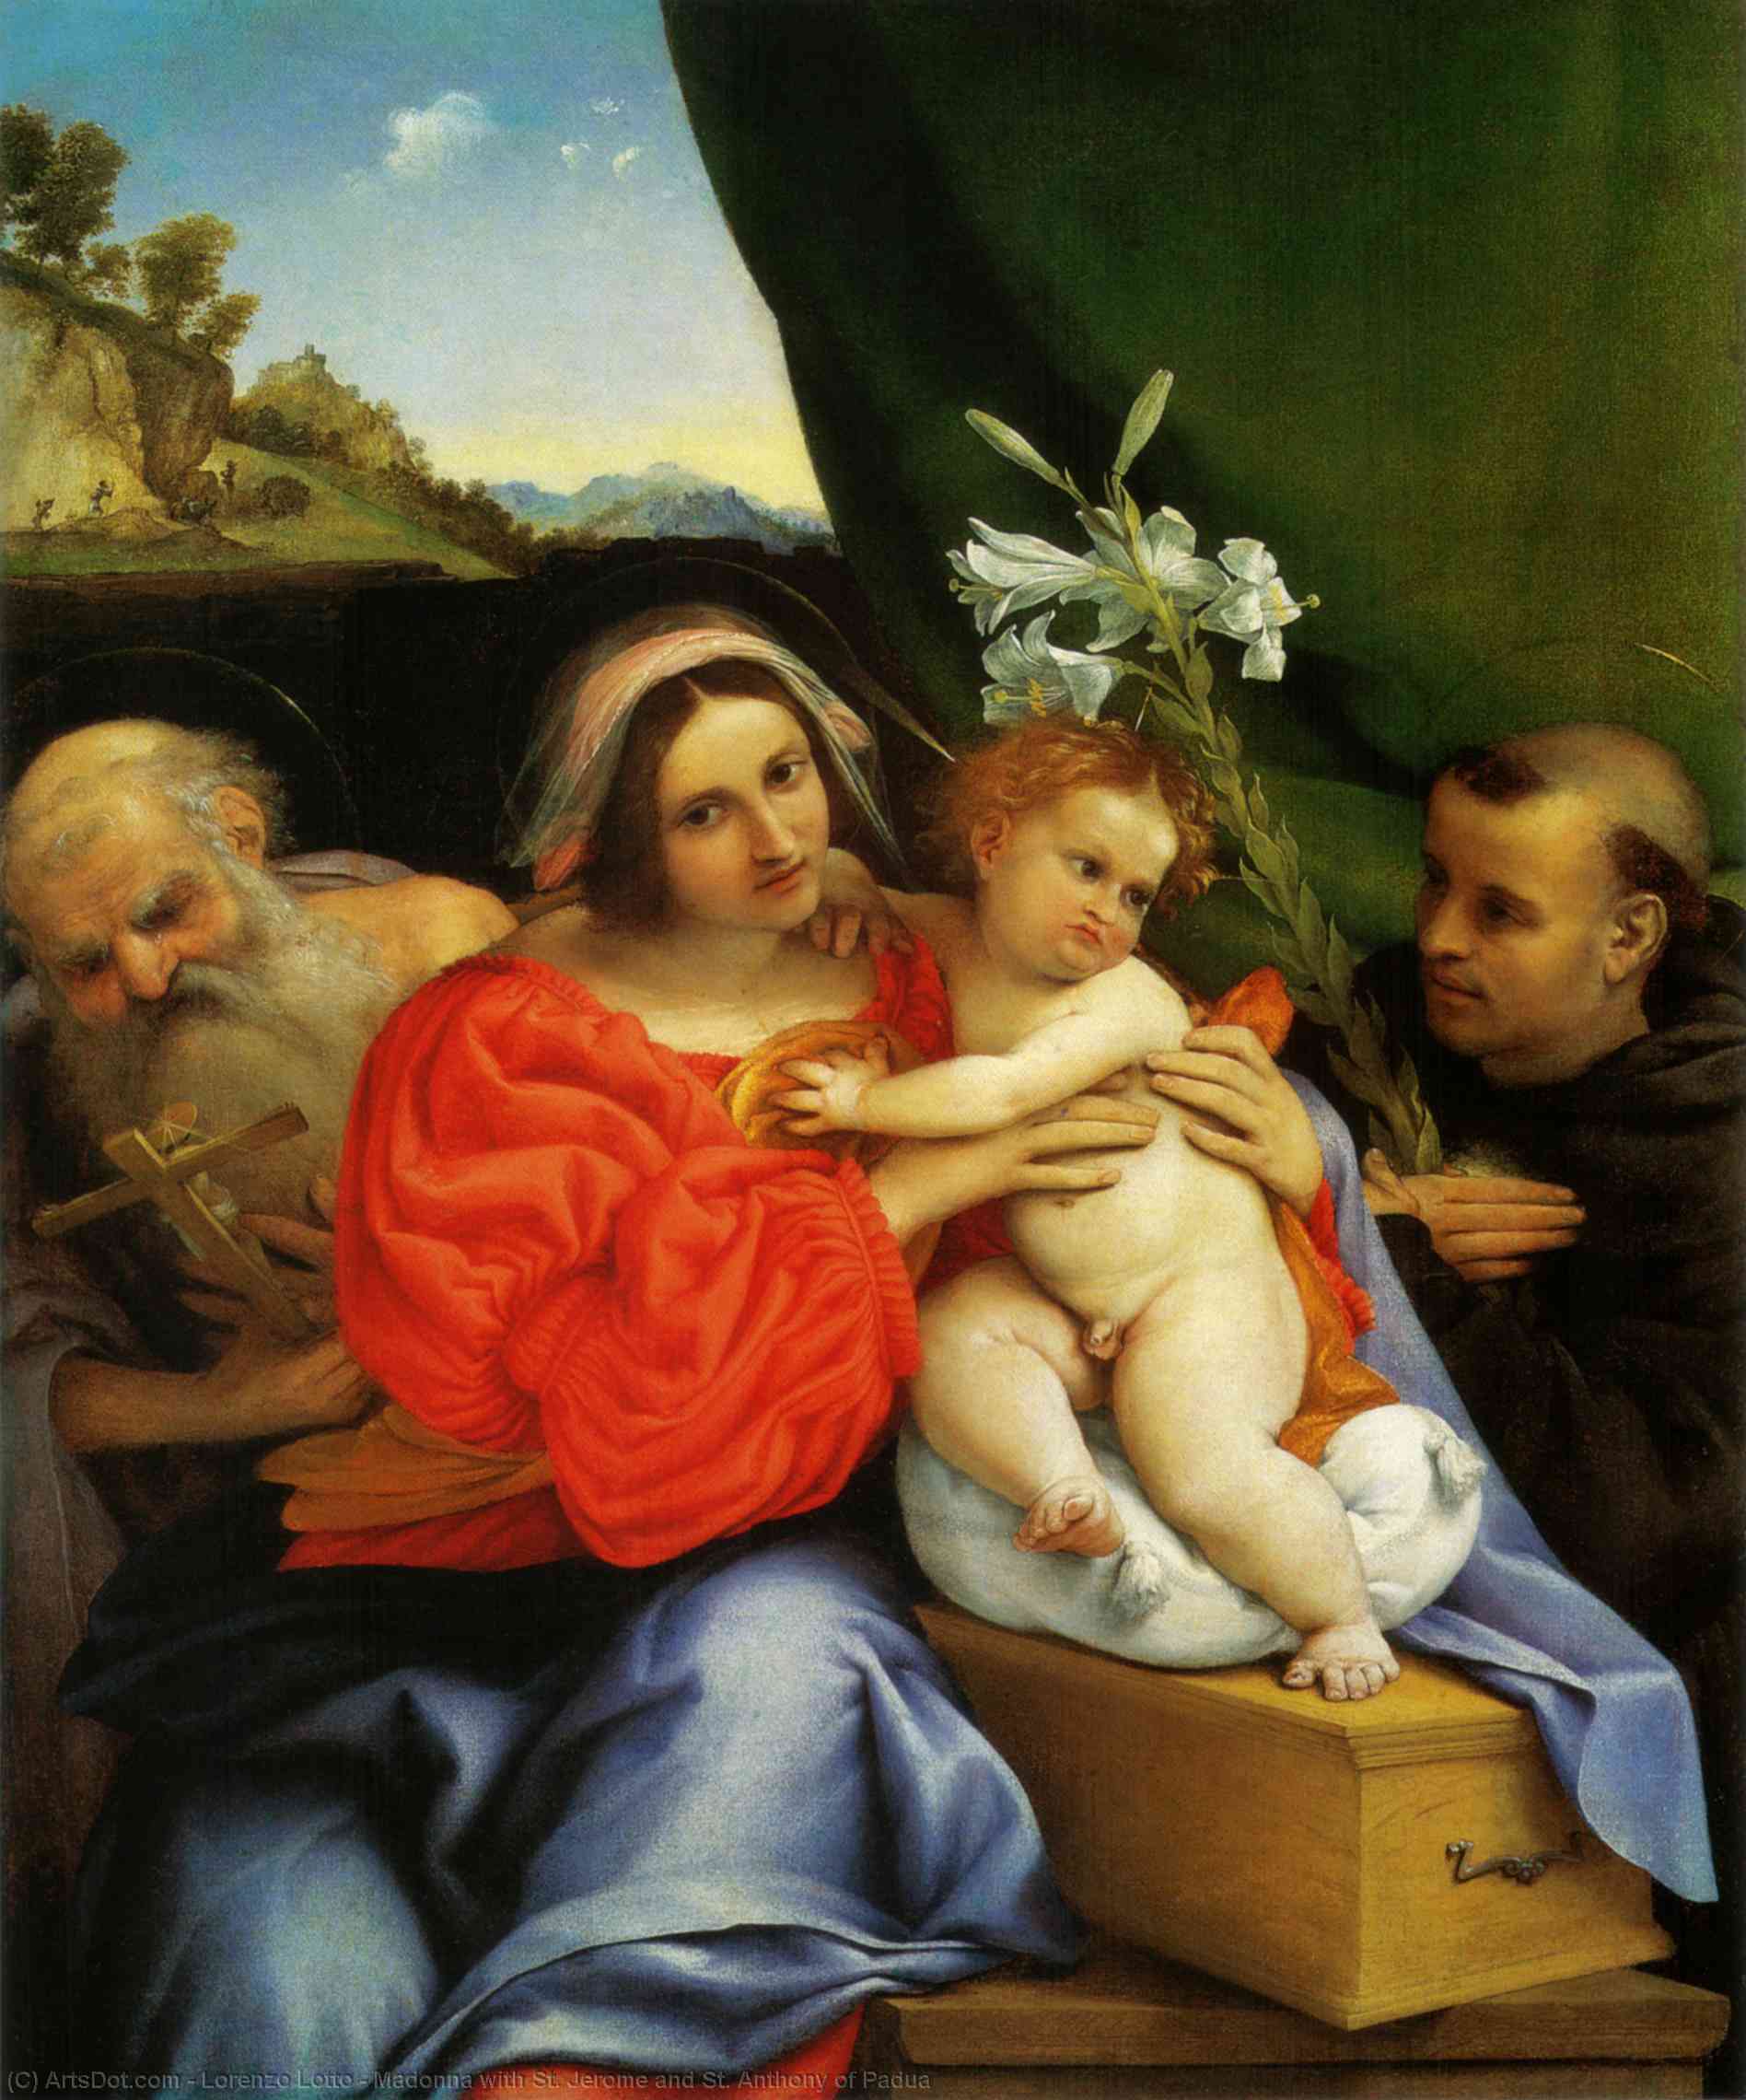 WikiOO.org - Enciklopedija dailės - Tapyba, meno kuriniai Lorenzo Lotto - Madonna with St. Jerome and St. Anthony of Padua